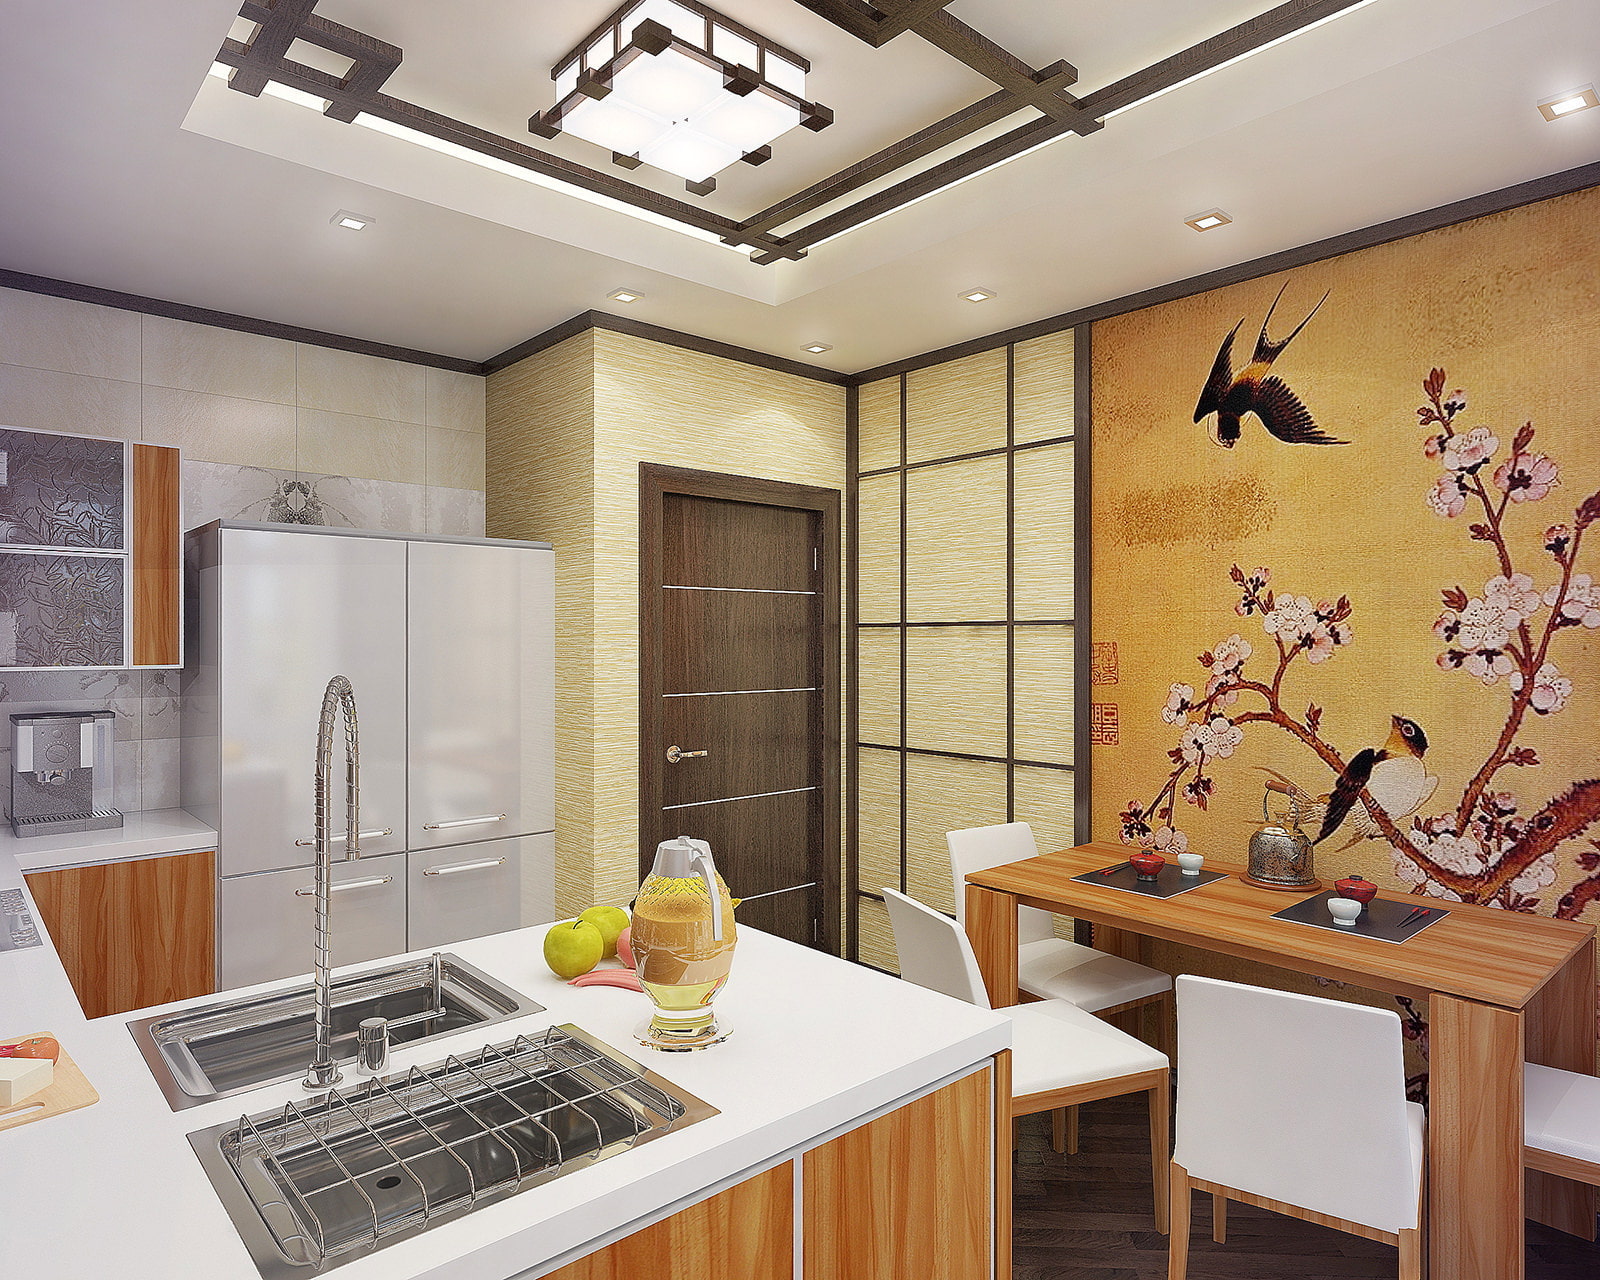 Кухня в японском стиле от отделки до декора (30 фото)